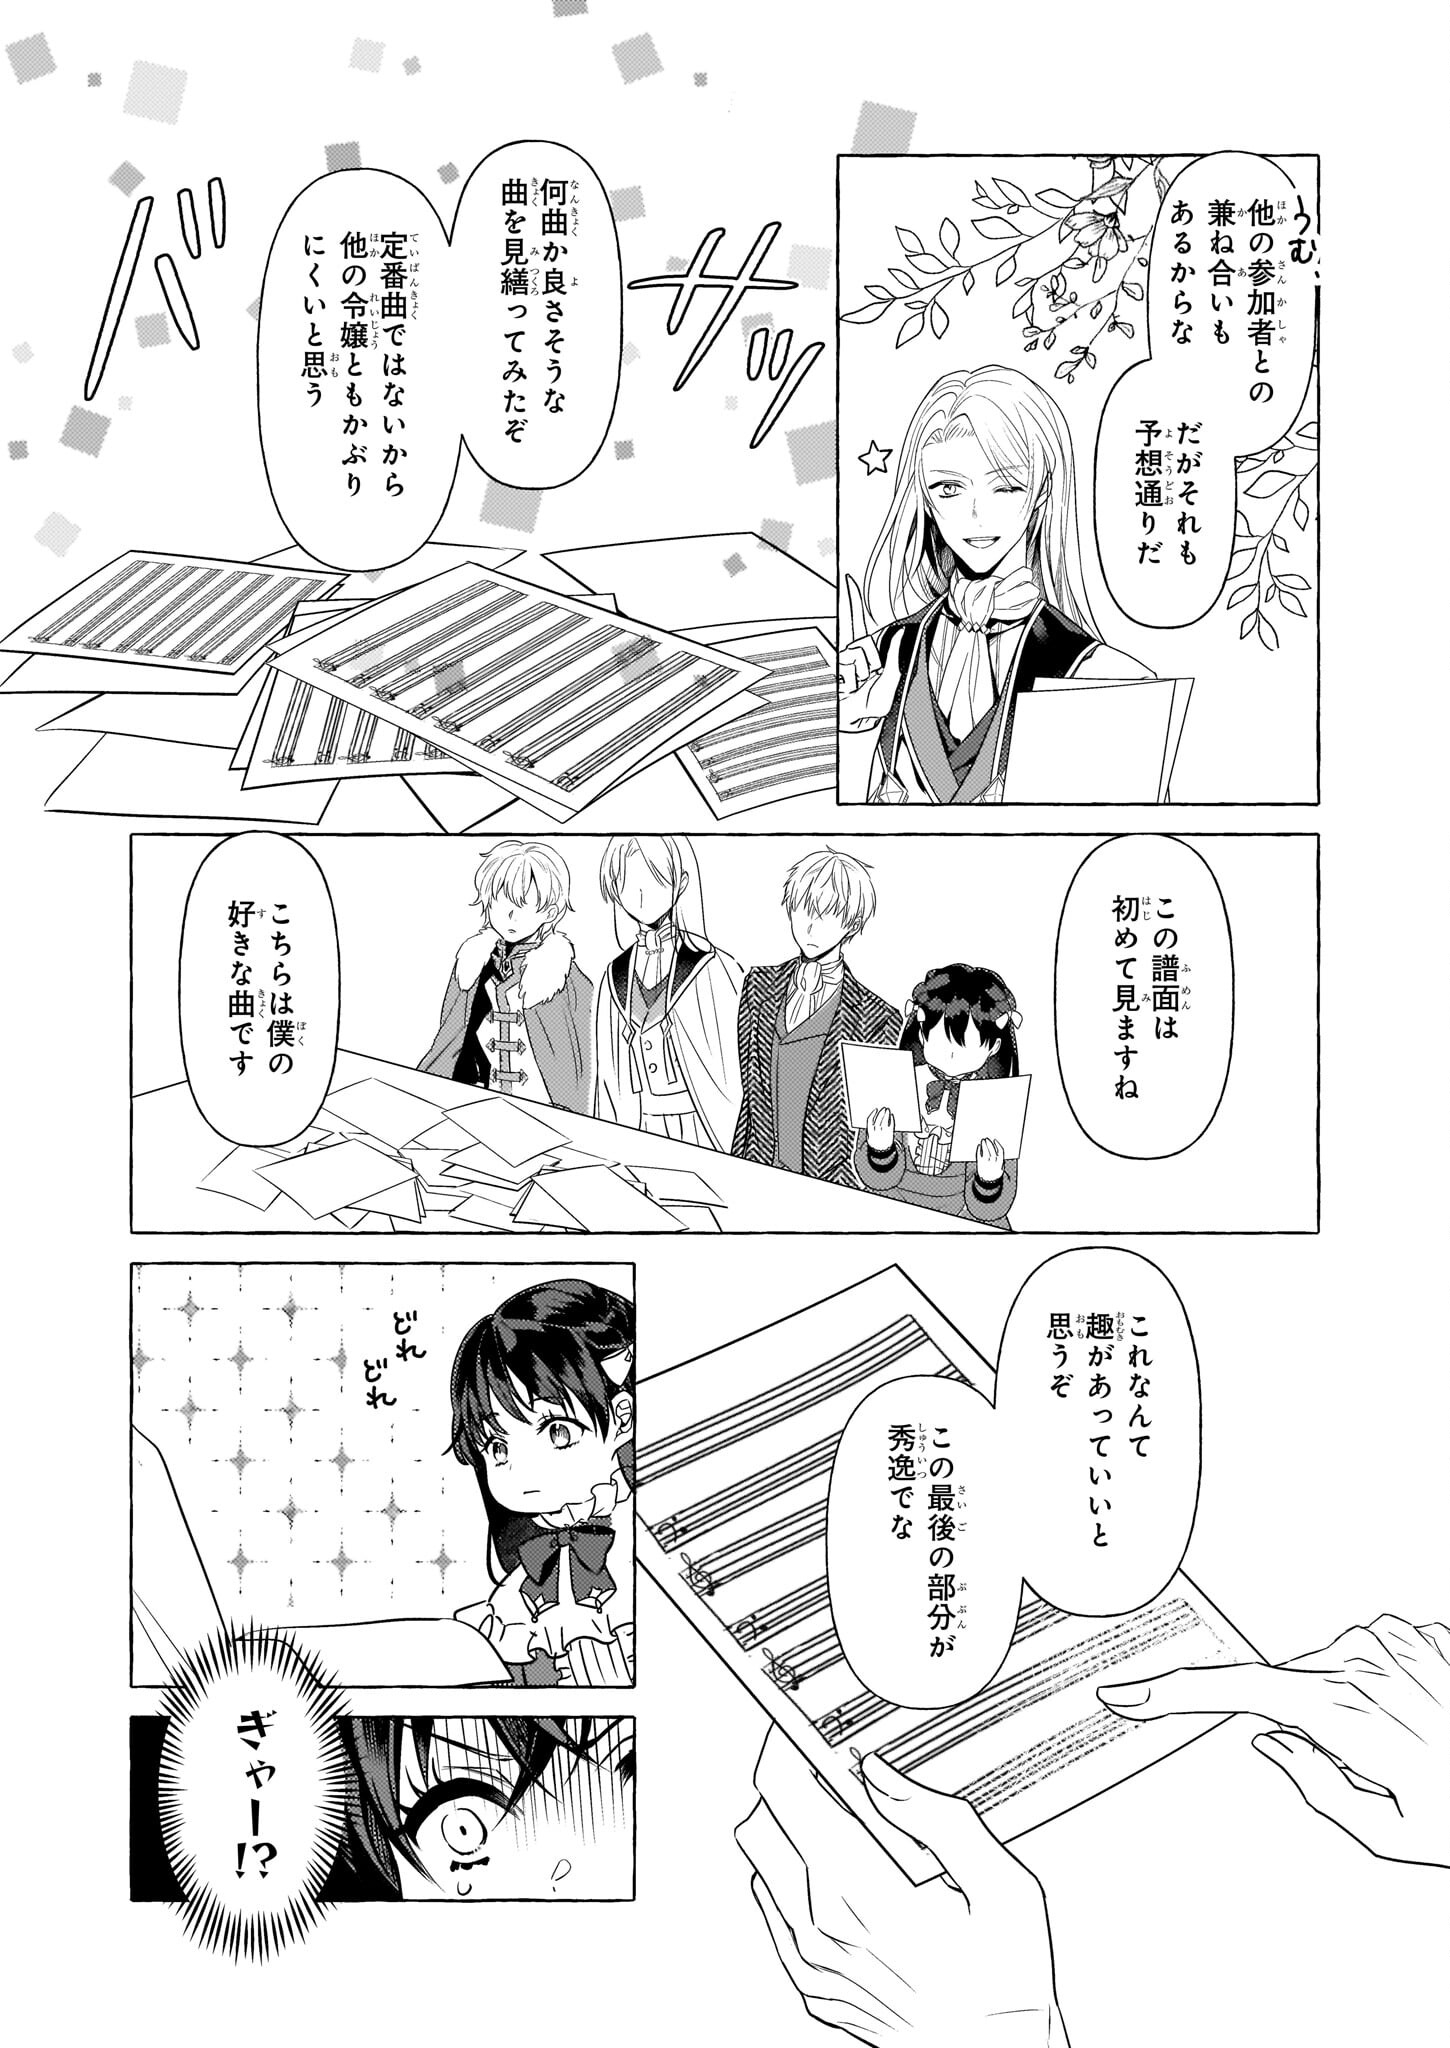 Tenseisaki ga Shoujo Manga no Shirobuta Reijou datta reBoooot! - Chapter 18 - Page 2